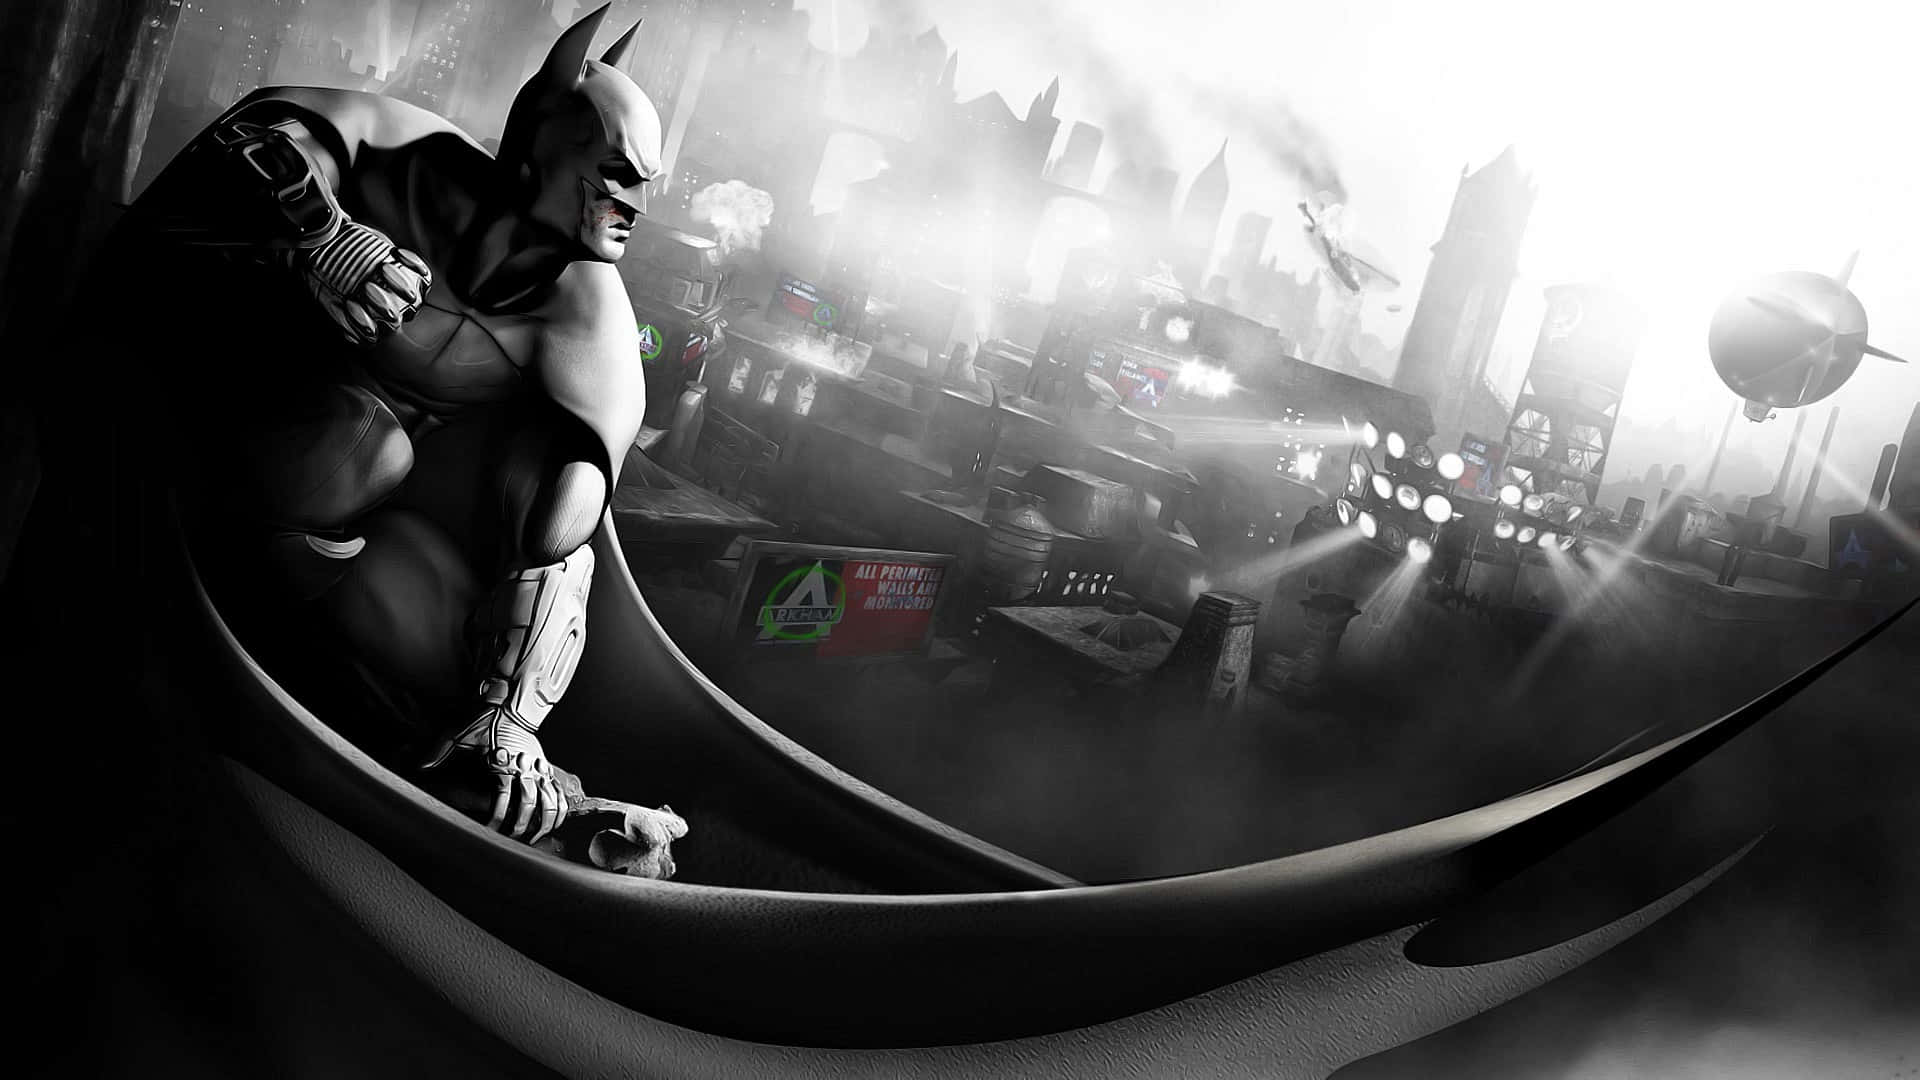 Batmanse Enfrenta A Sus Enemigos En Los Oscuros Callejones De Arkham City